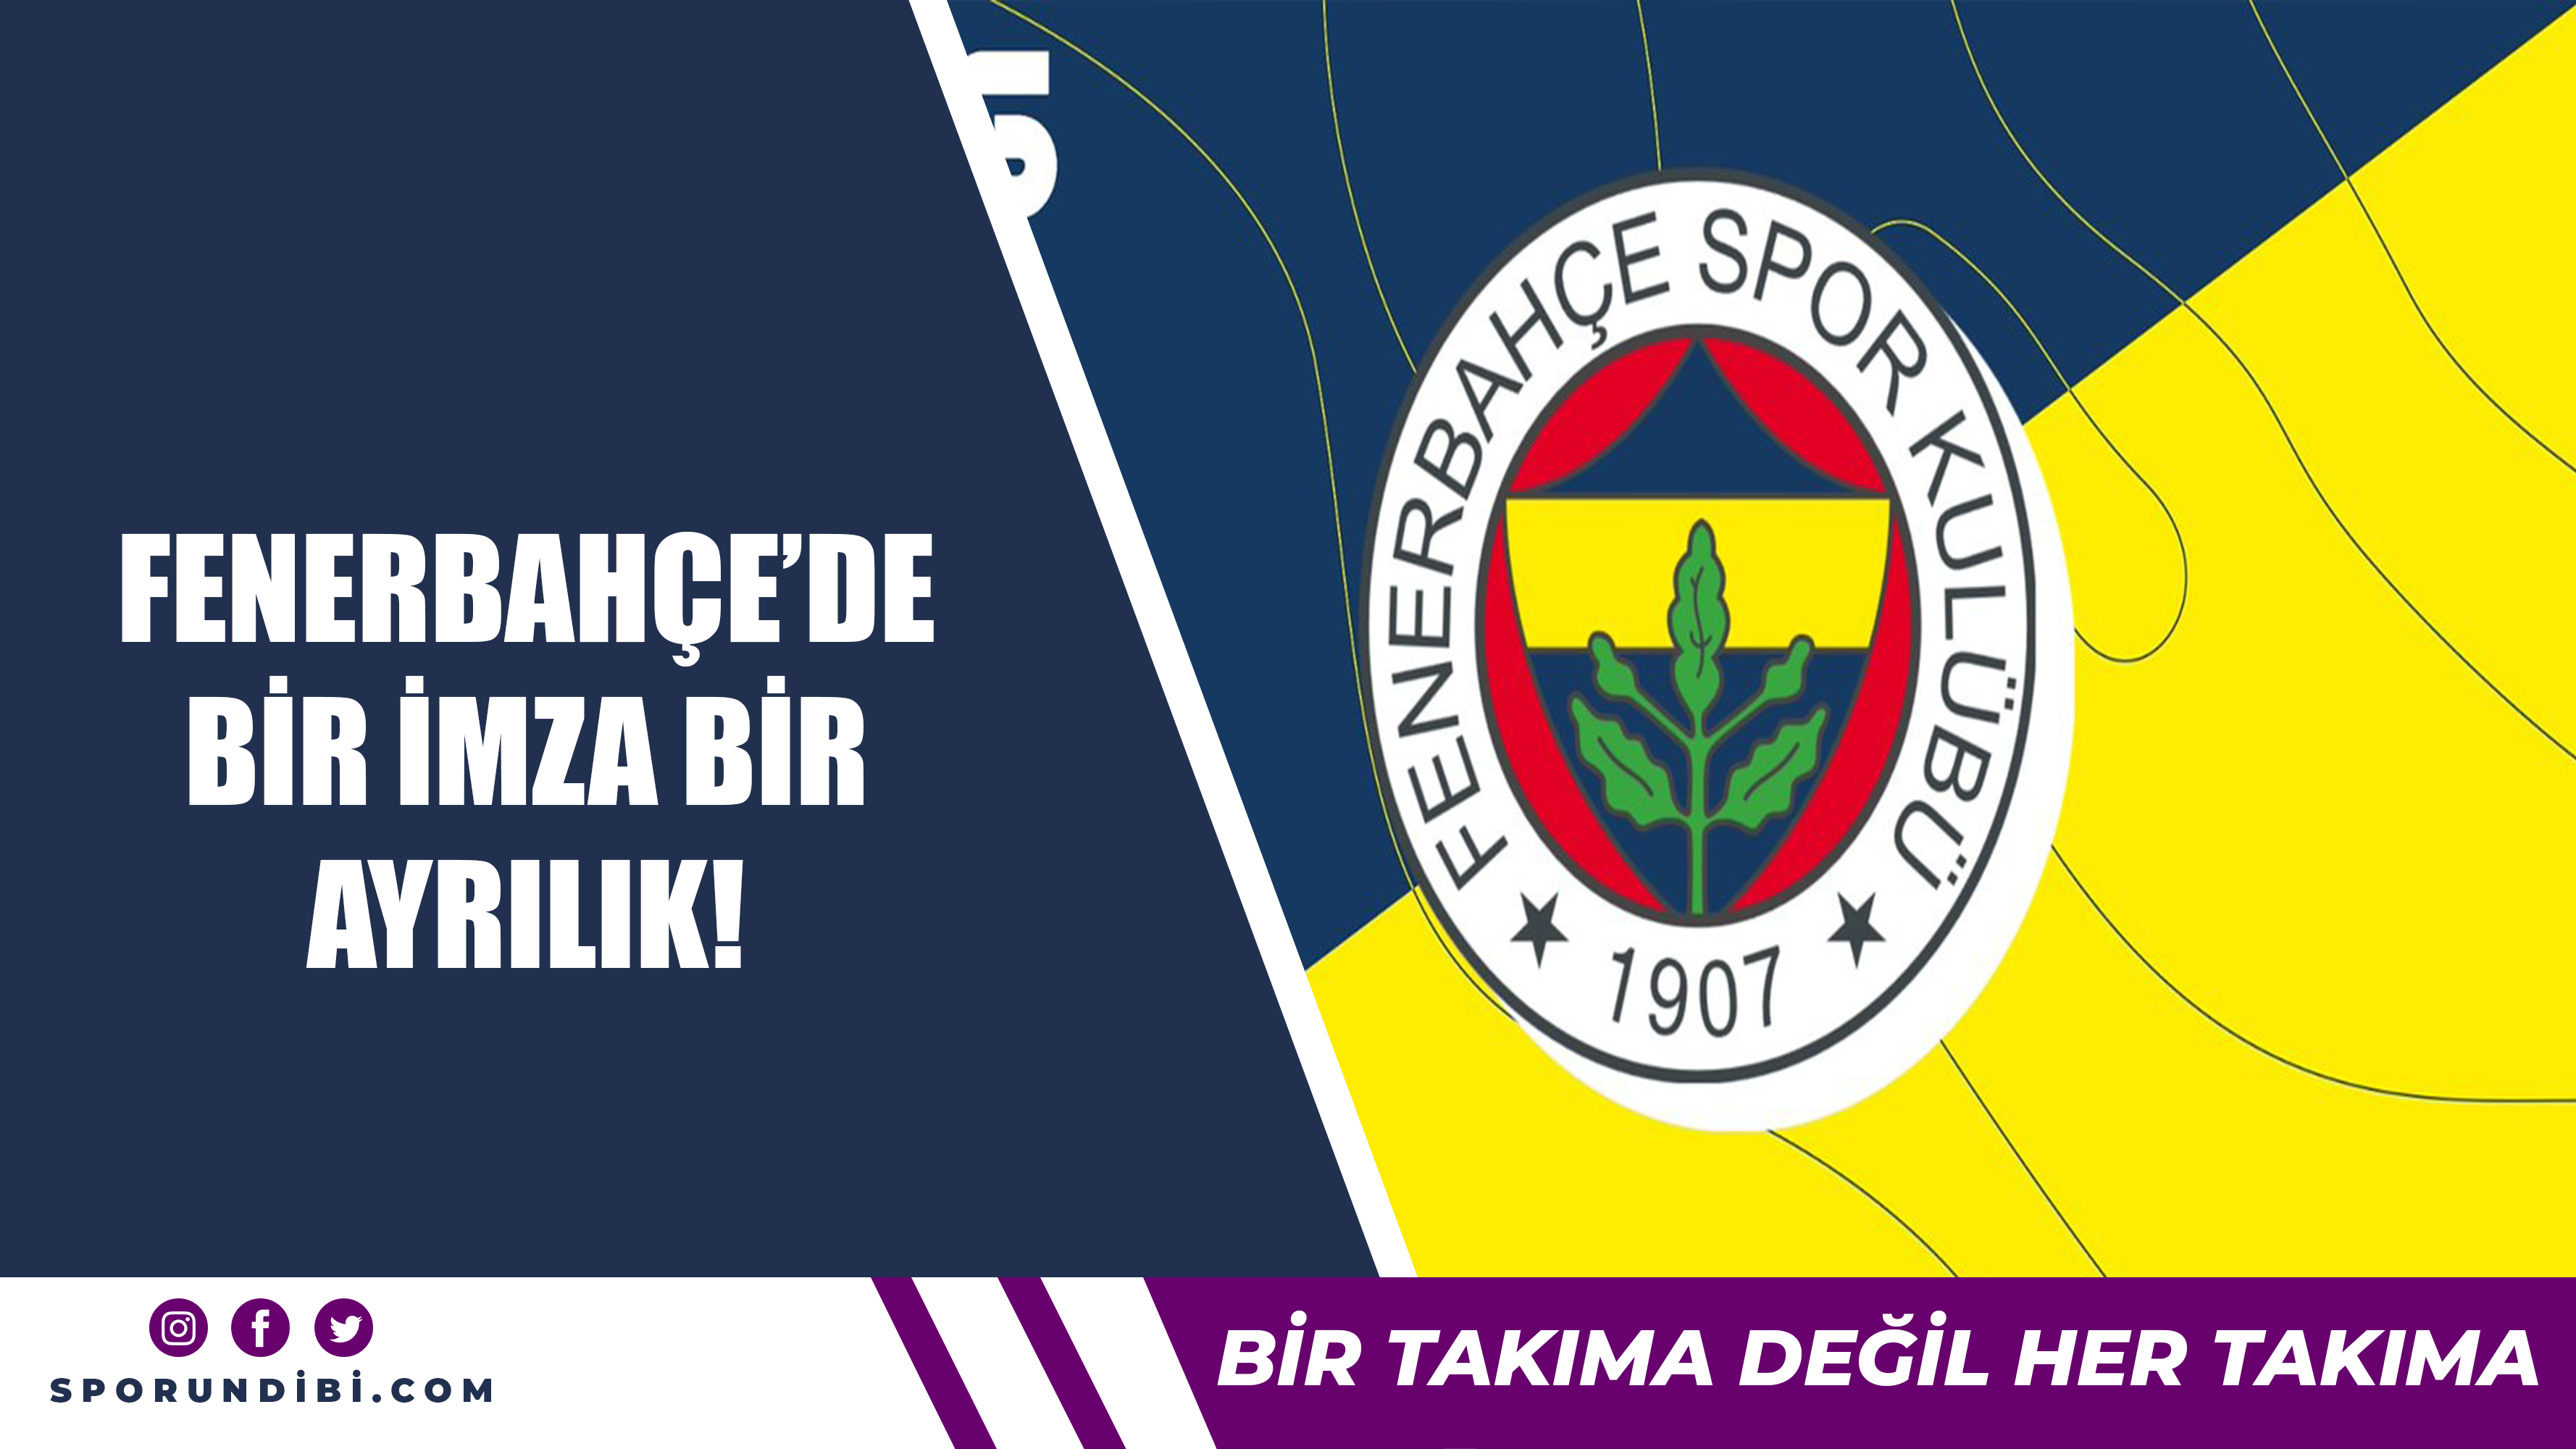 Fenerbahçe'de bir imza bir ayrılık!